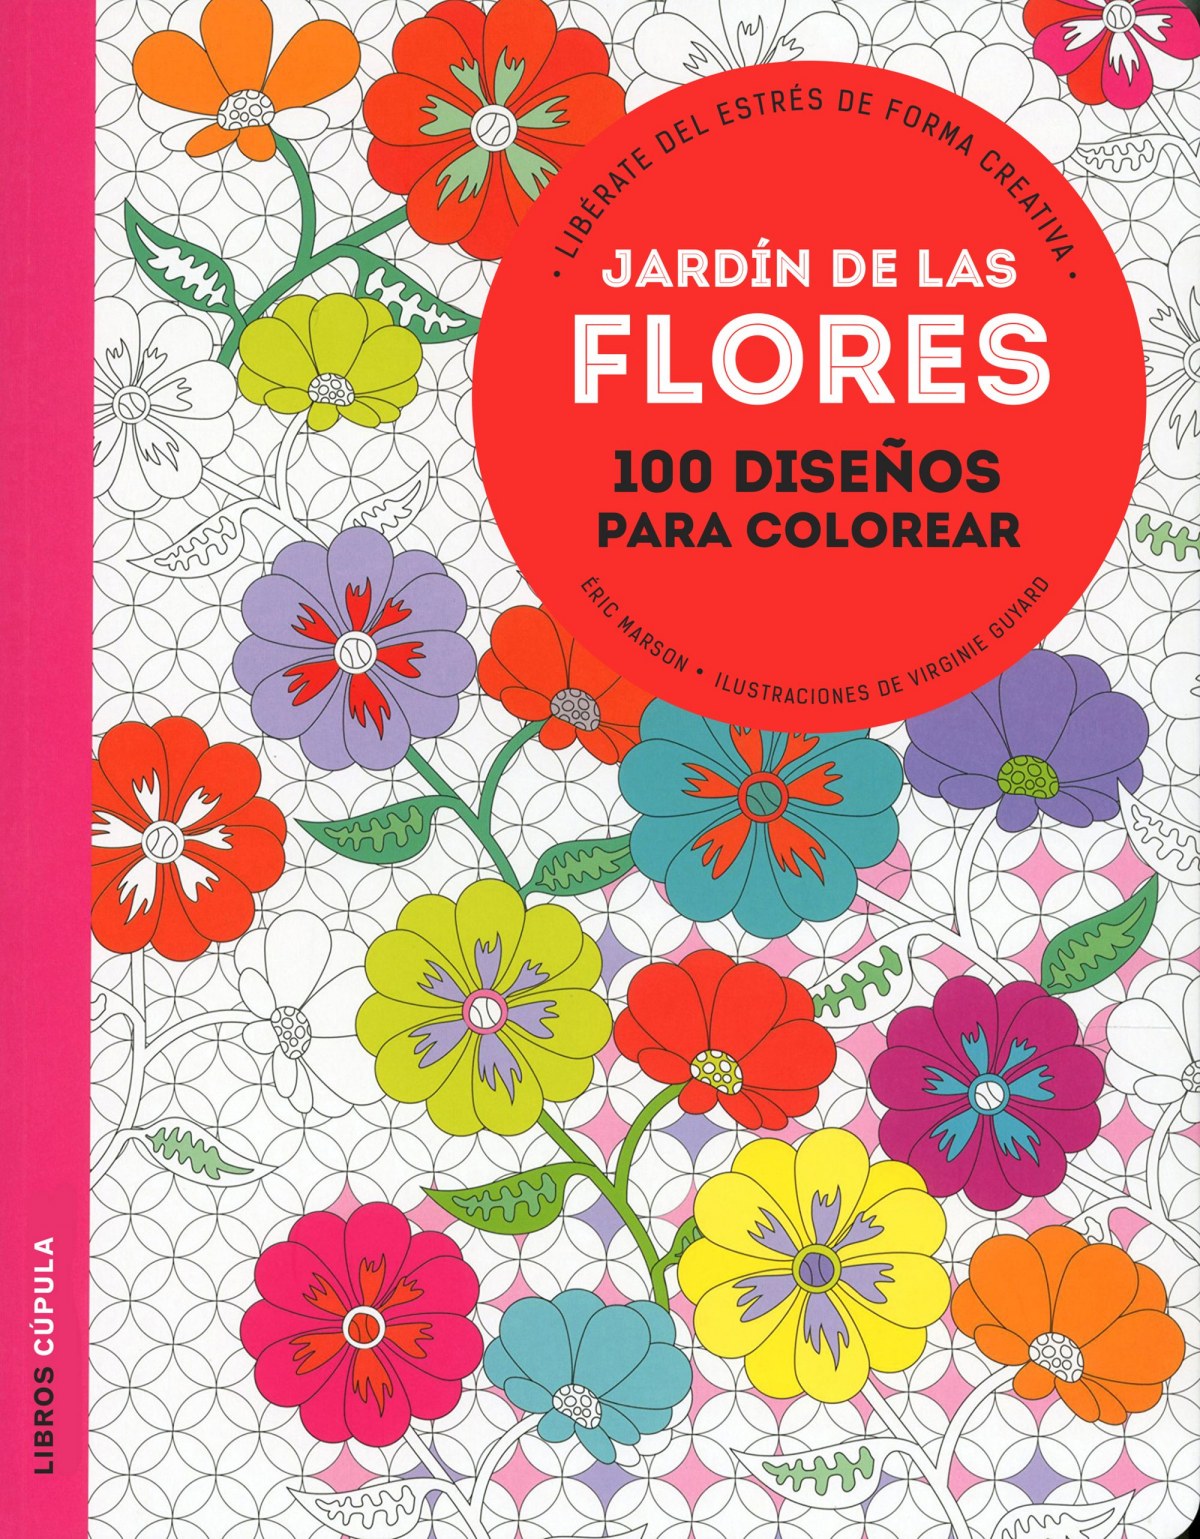 Jardín de las flores: 100 diseños para colorear. Libérate del estrés de forma creativa (Hobbies)